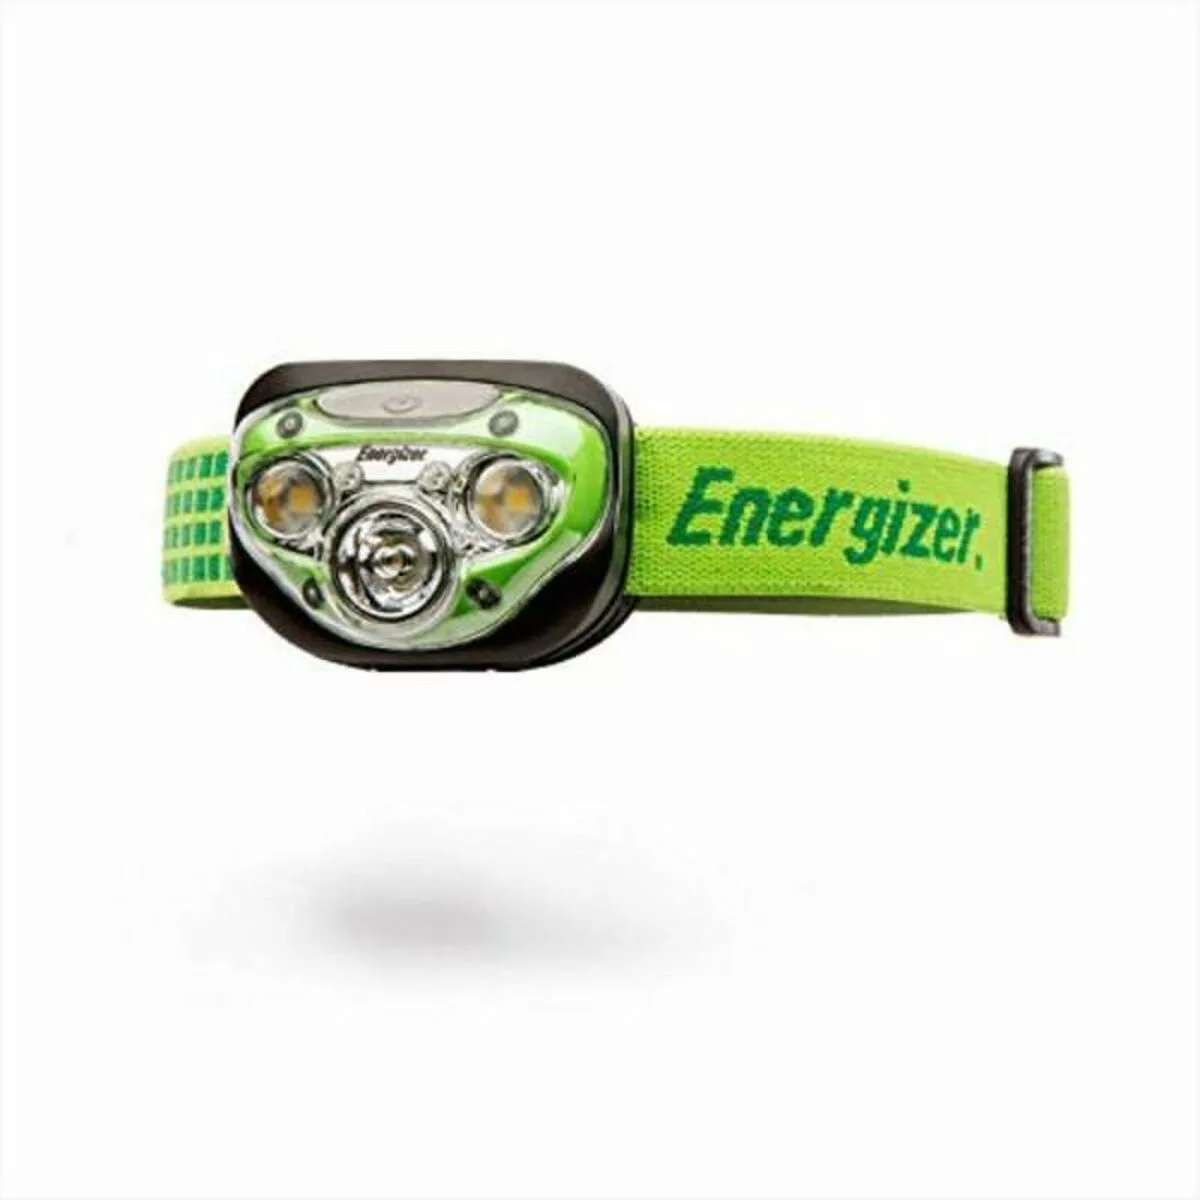 Taschenlampe Energizer 631638 Aaa Grün 250 Lm günstig online kaufen